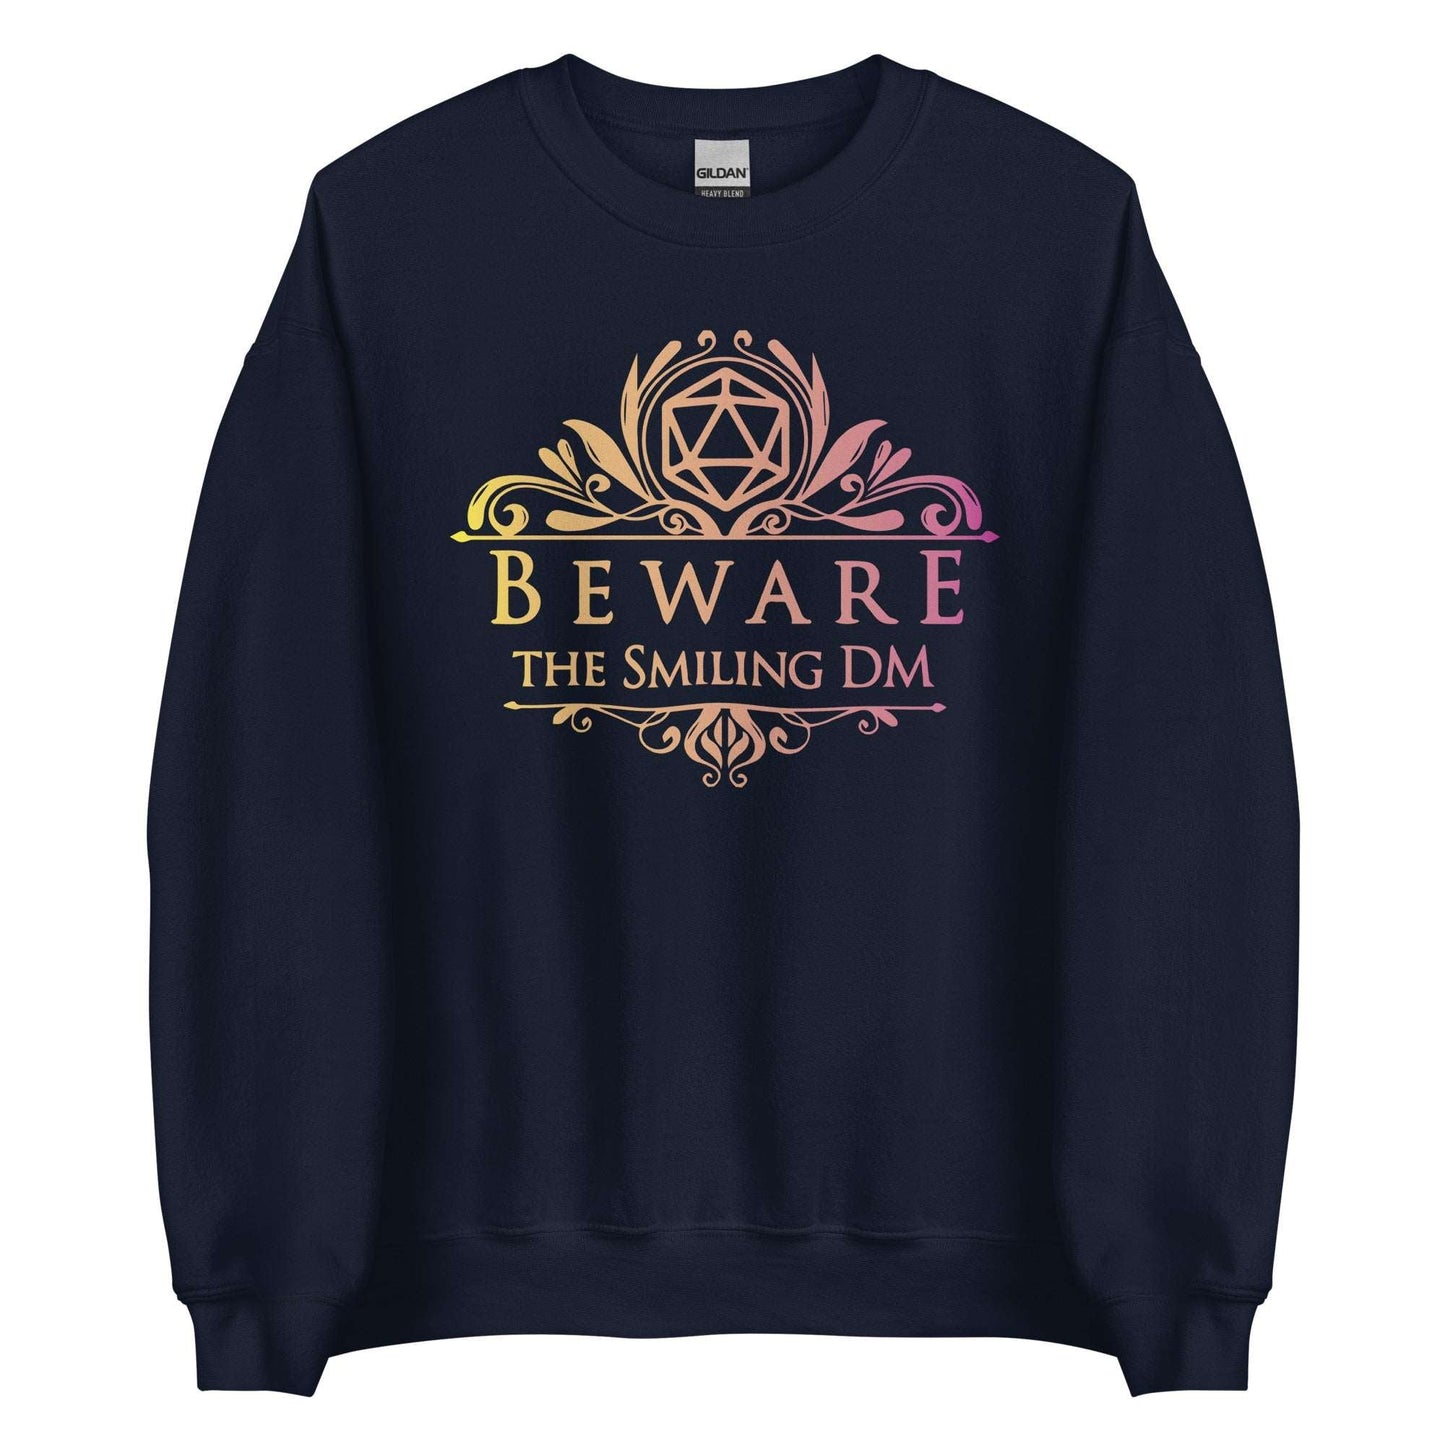 DnD Beware the Smiling DM Sweatshirt Sweatshirt S / Navy